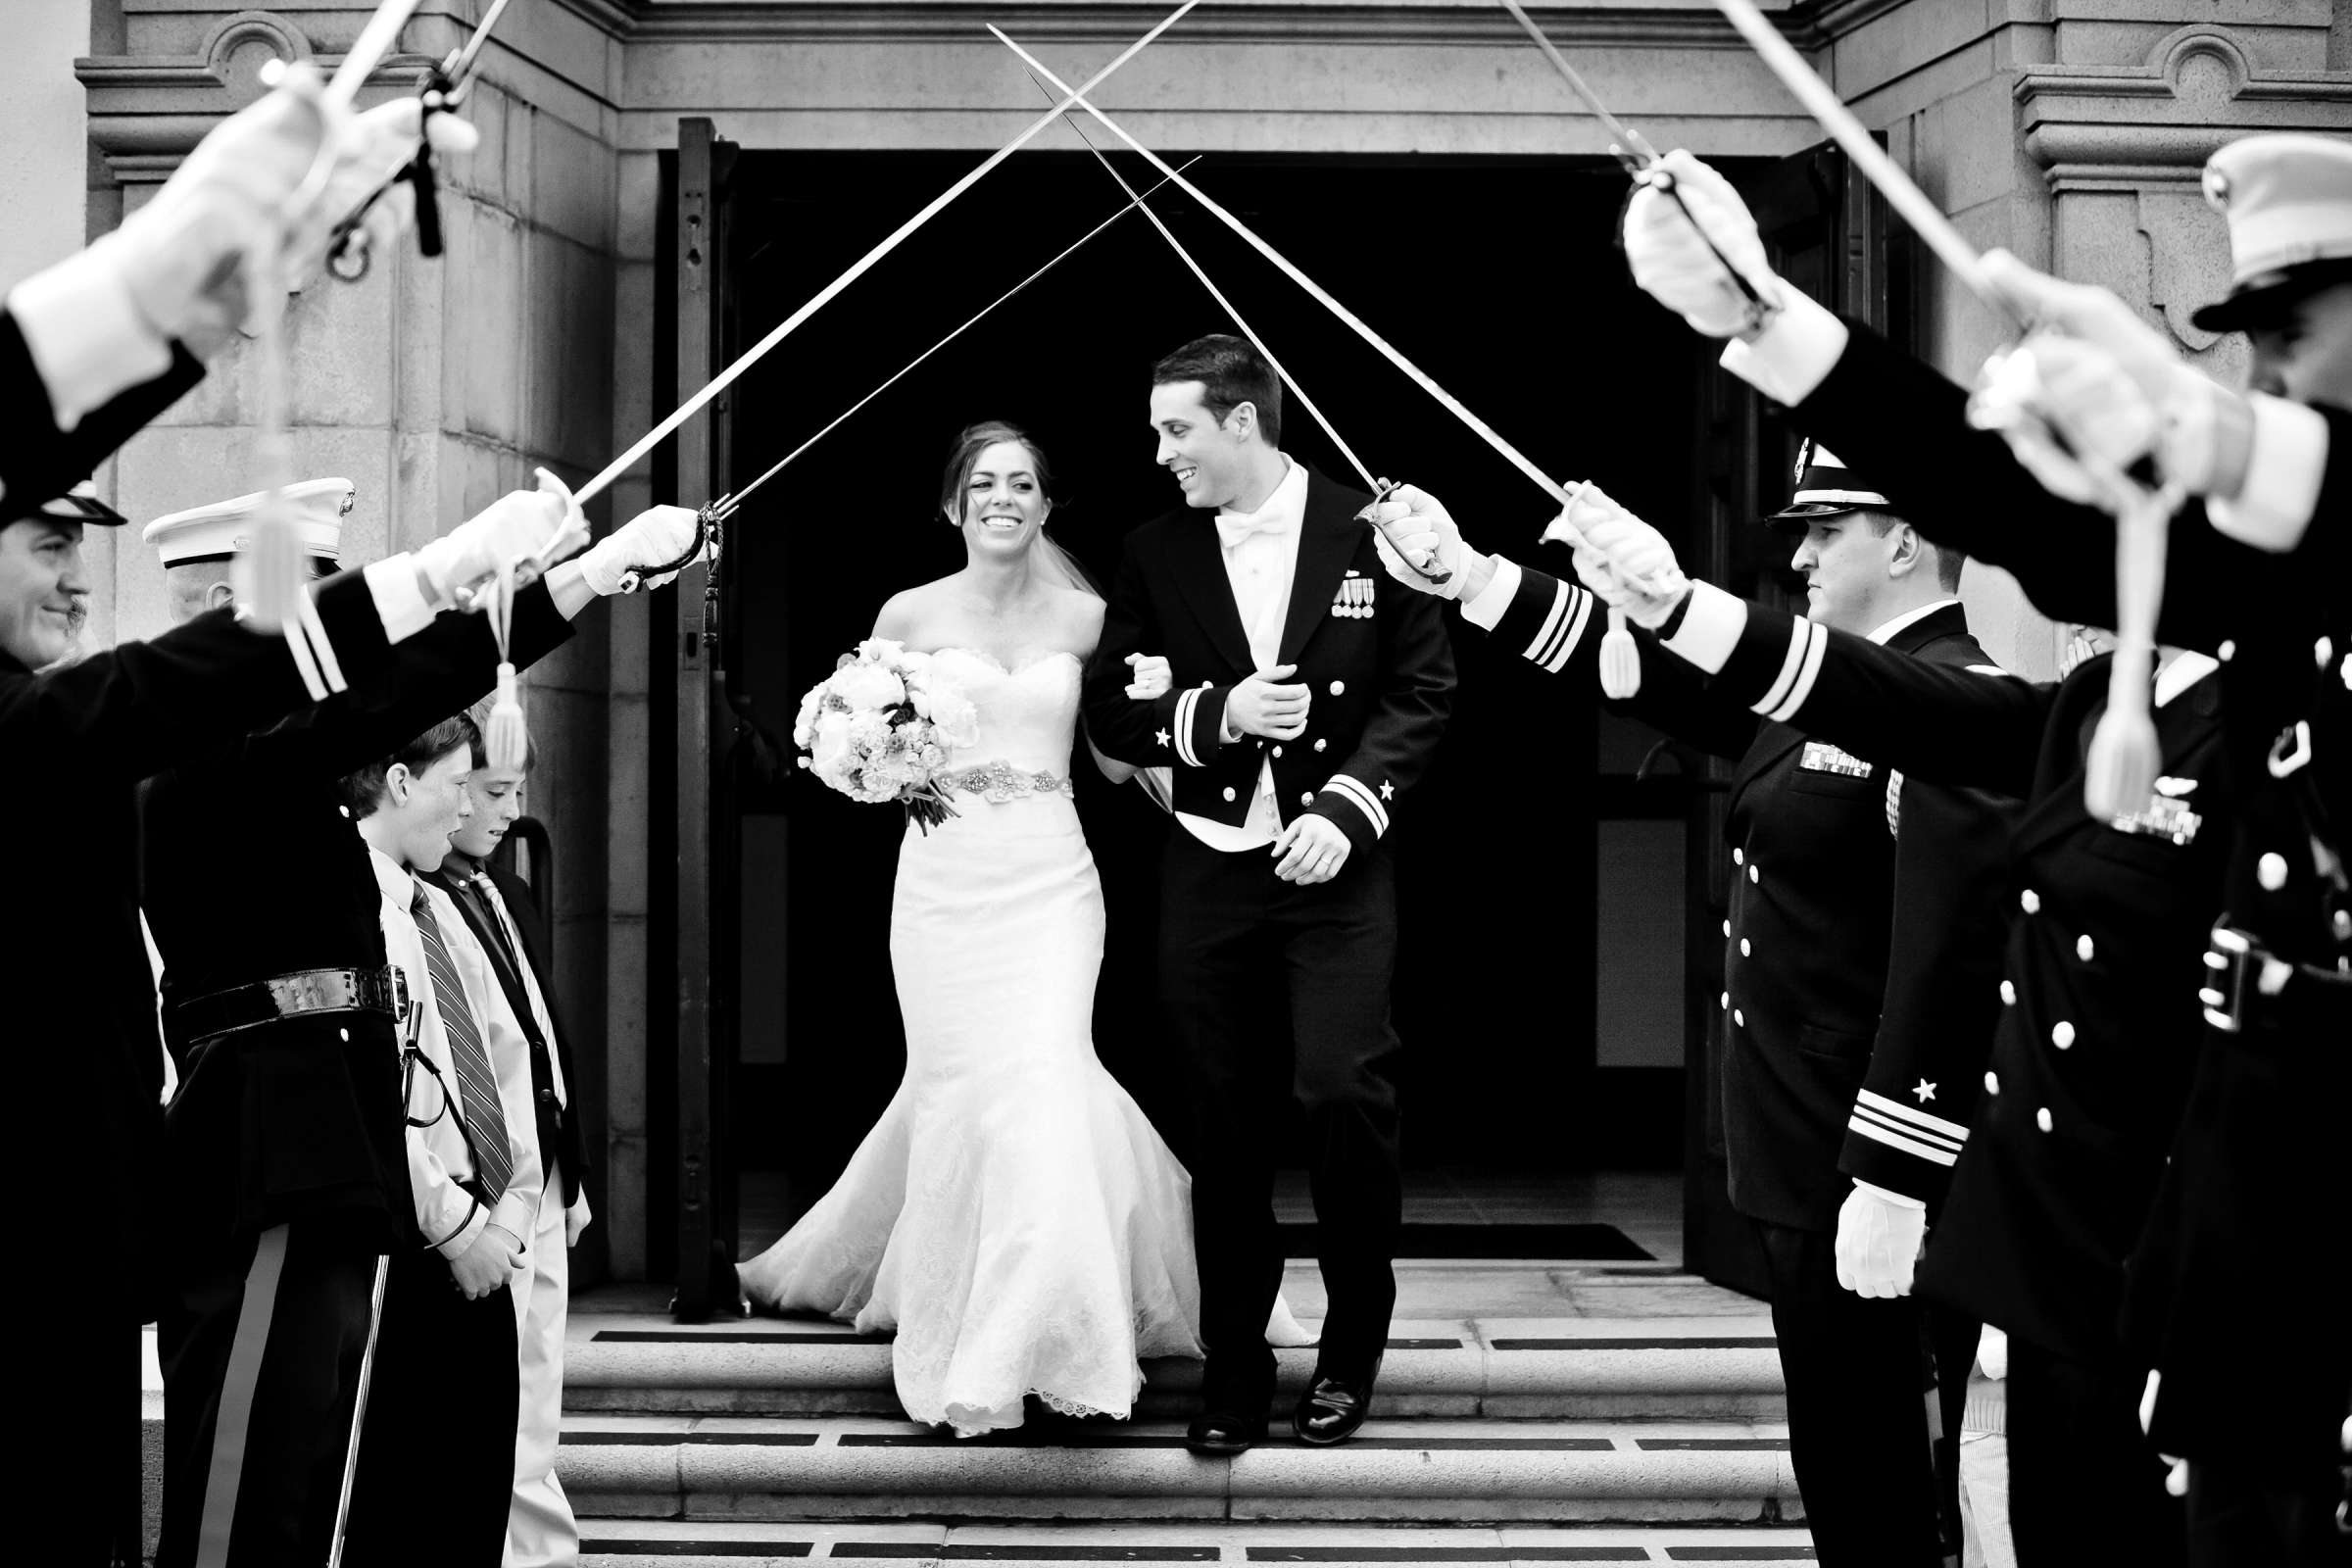 Admiral Kidd Club Wedding coordinated by I Do Weddings, Ashley and Rhett Wedding Photo #358480 by True Photography